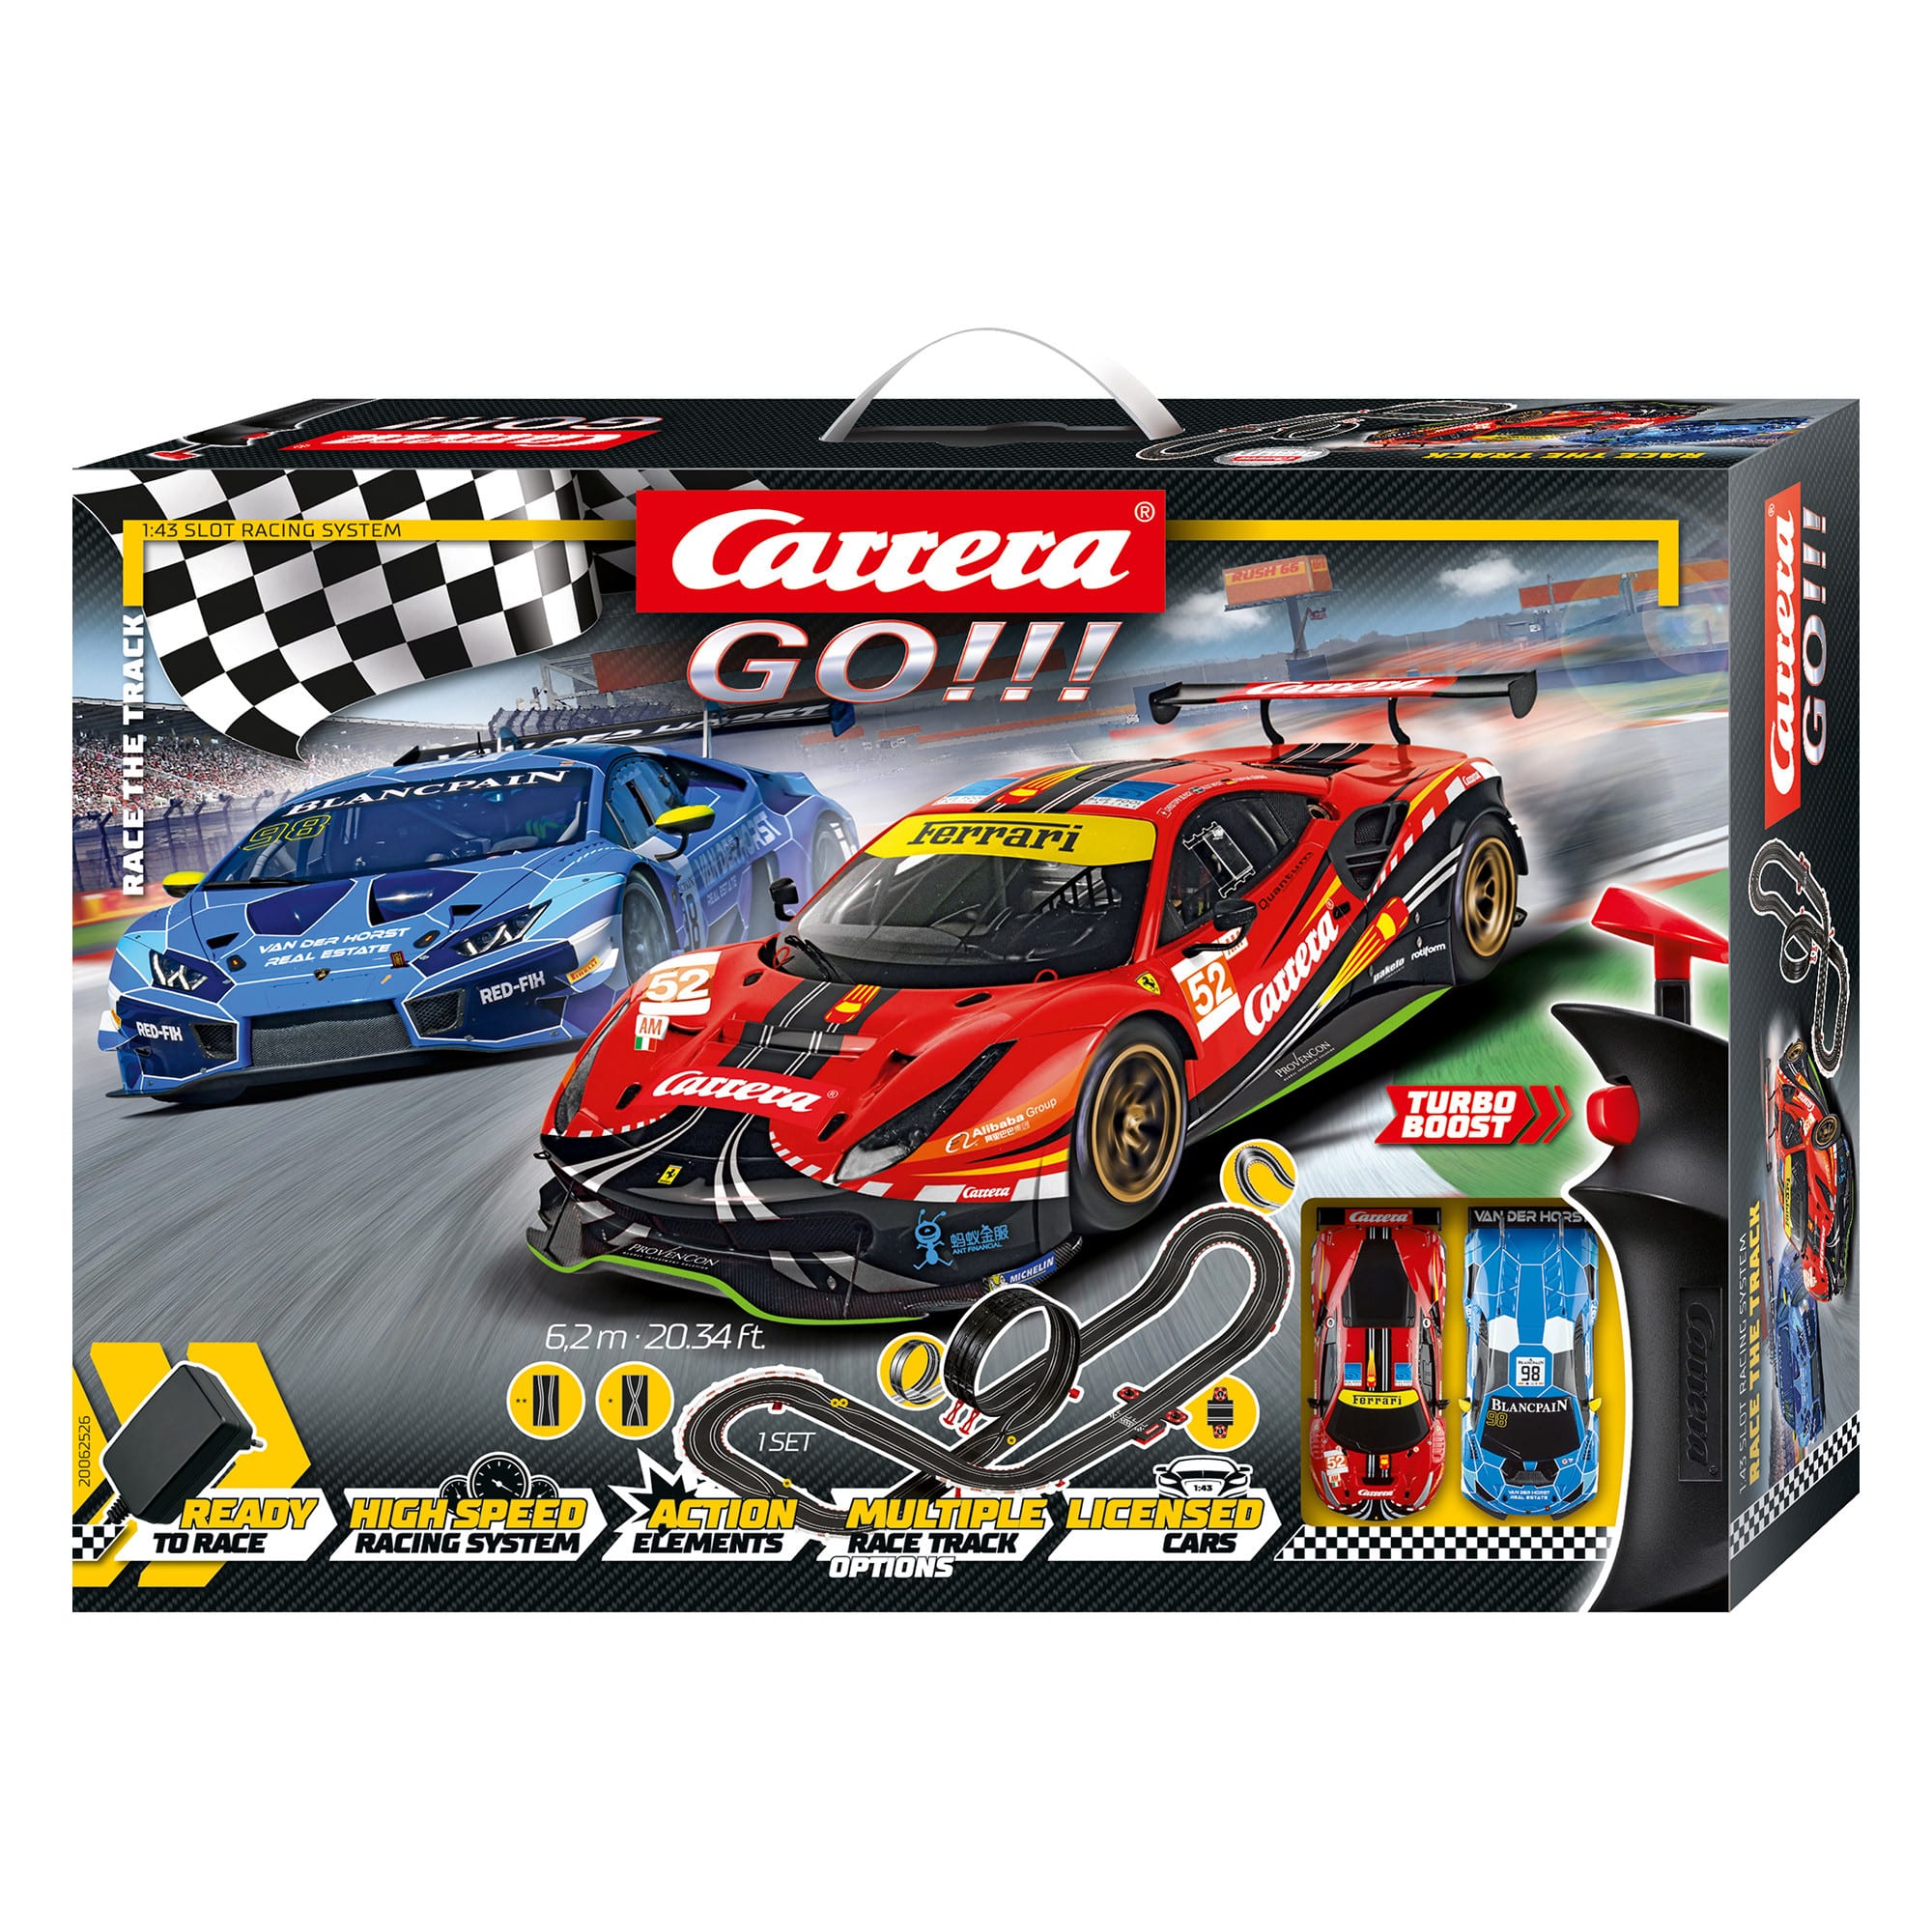 Carrera Go - Slot Car Set - Race The Track